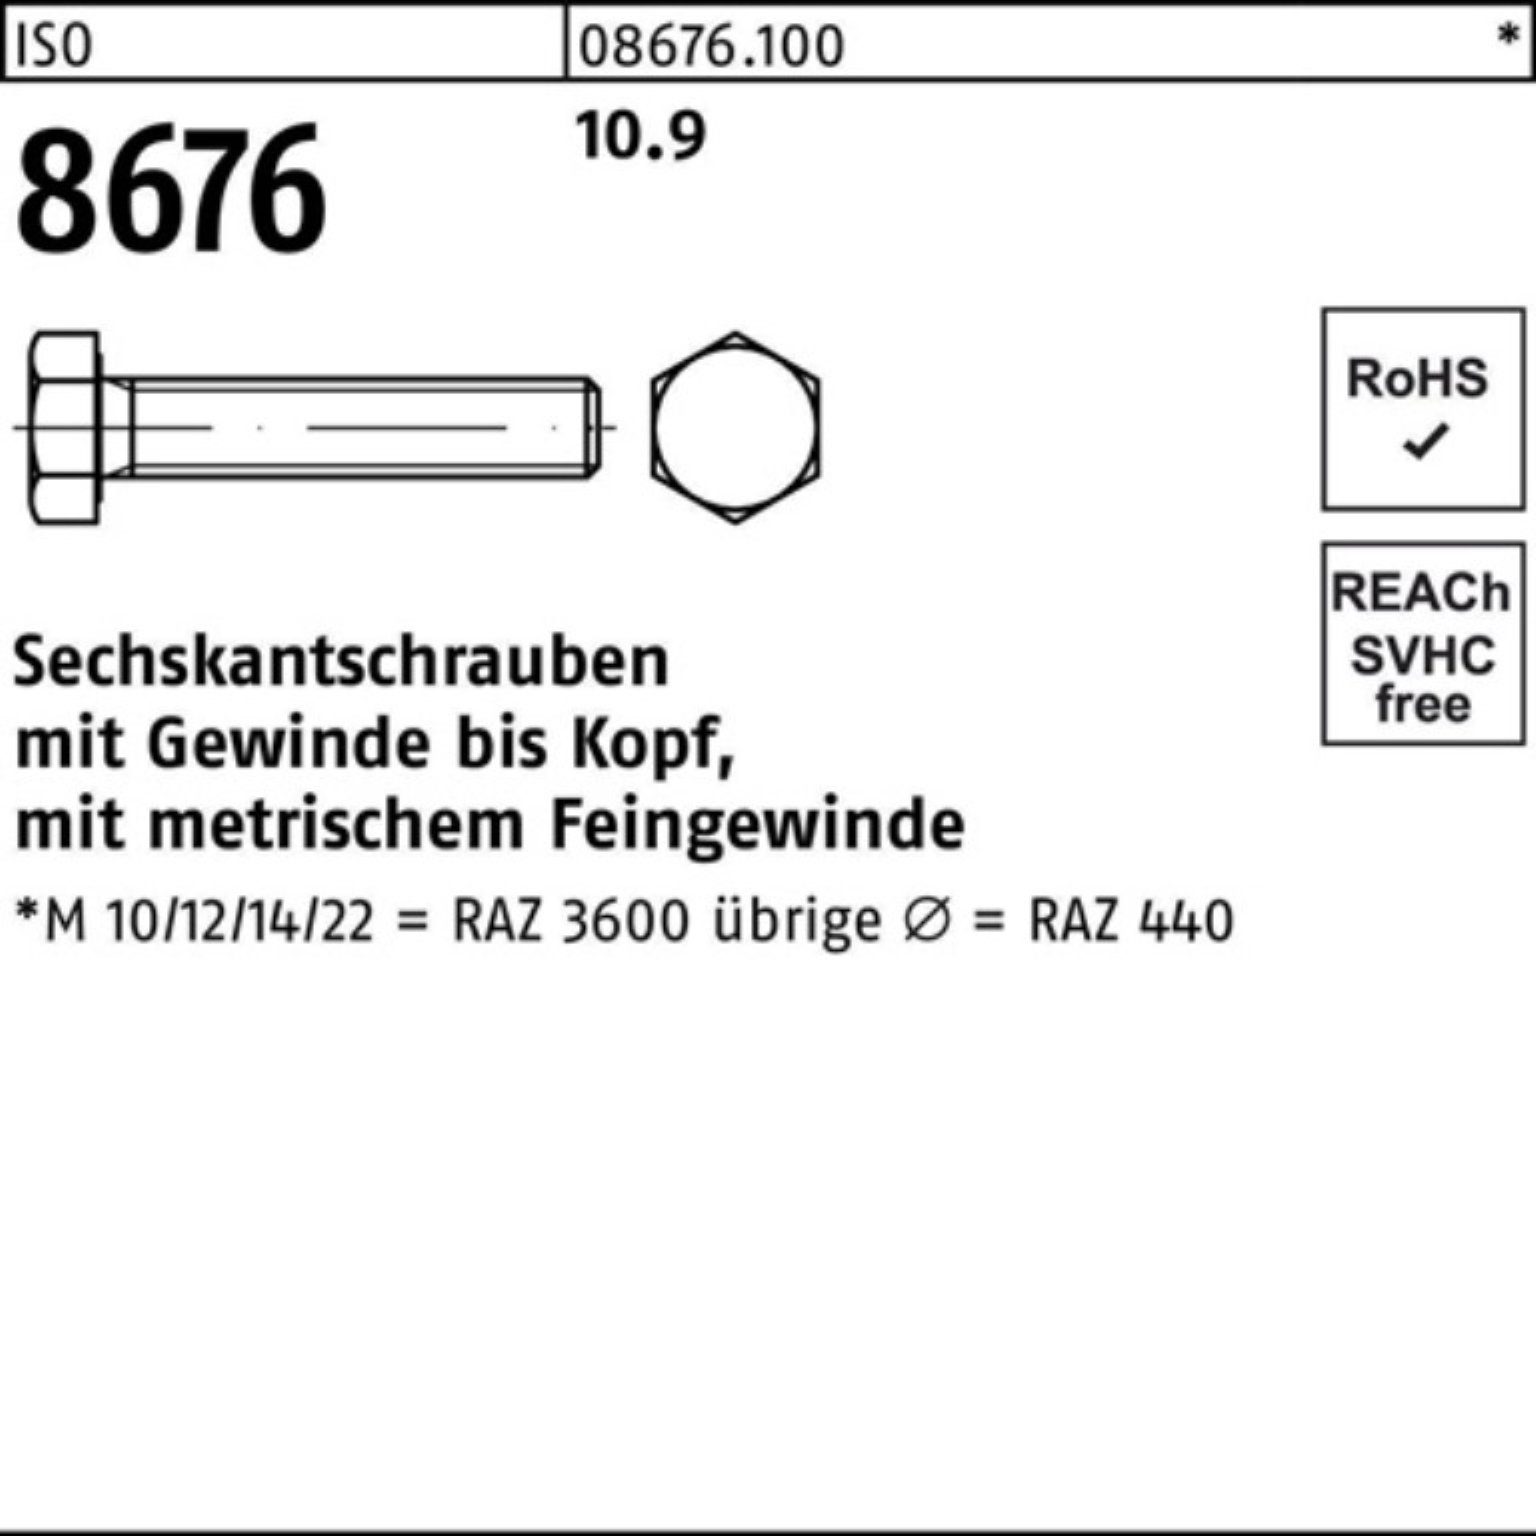 Reyher Sechskantschraube 100er Pack Sechskantschraube 50 VG 8676 M18x1,5x 10.9 ISO IS 50 Stück